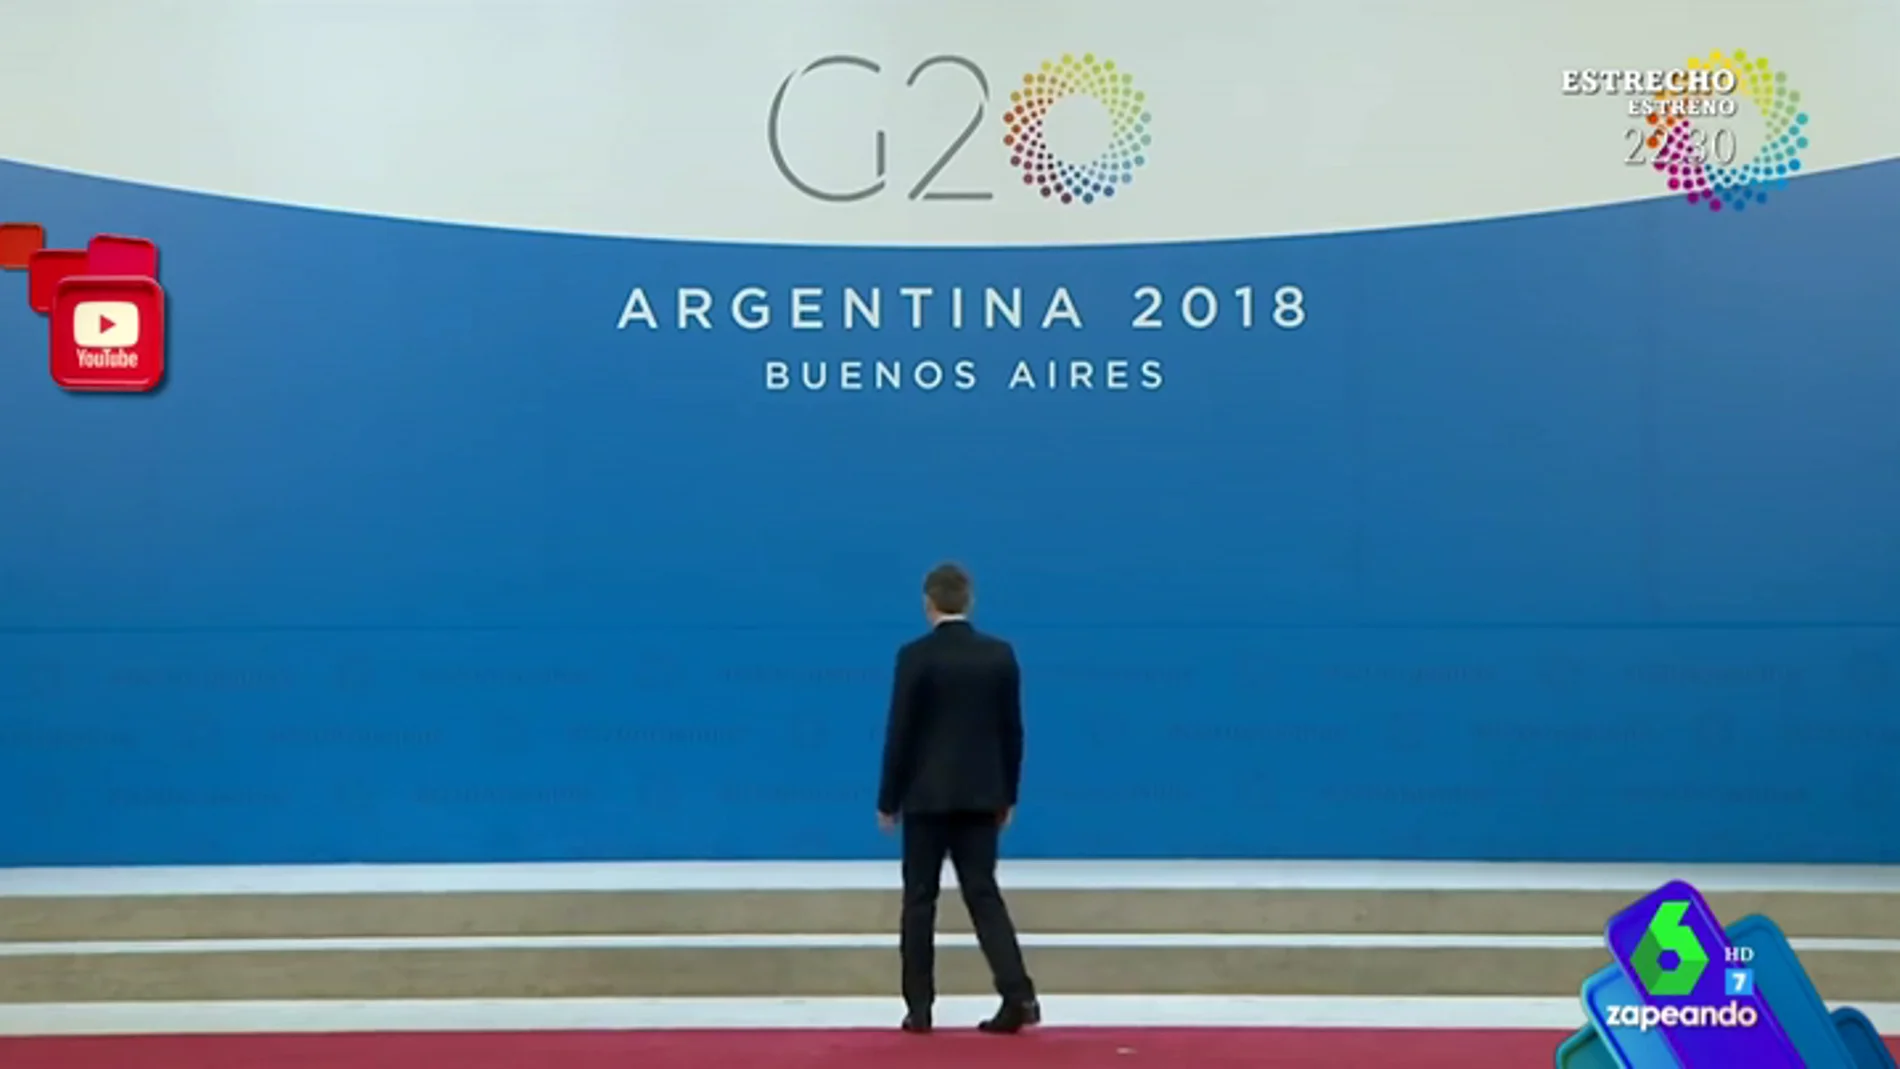 Solo y dando vueltas en círculo, el surrealista momento de Macri tras ser abandonado por Donald Trump